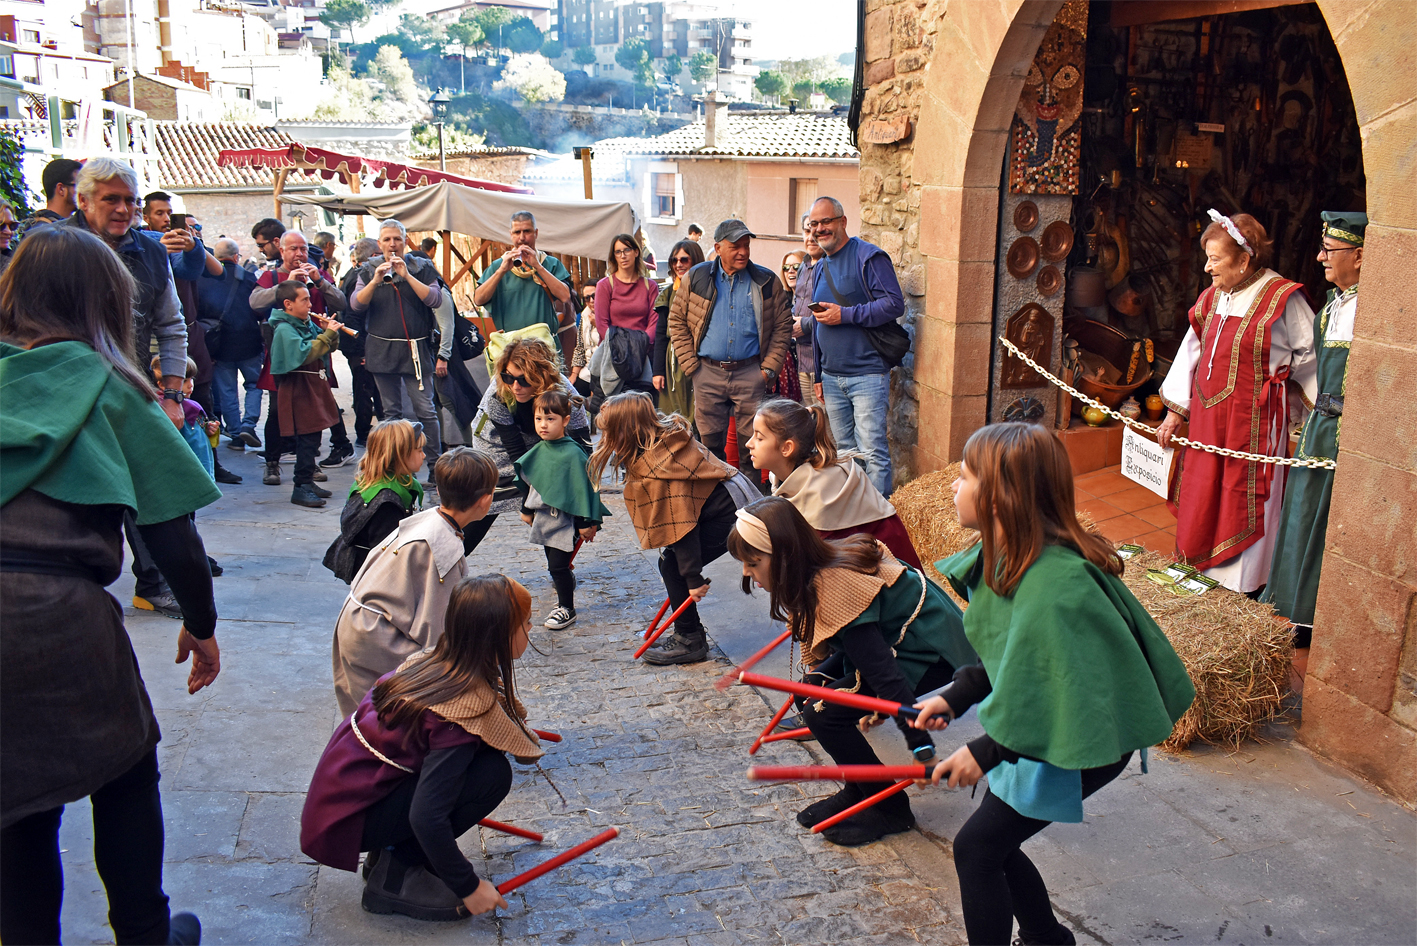 Ball de Bastons al carrer Sant Cristòfol durant el seguici de la Castlana, durant la 20a Fira Medieval d'Oficis de Súria.